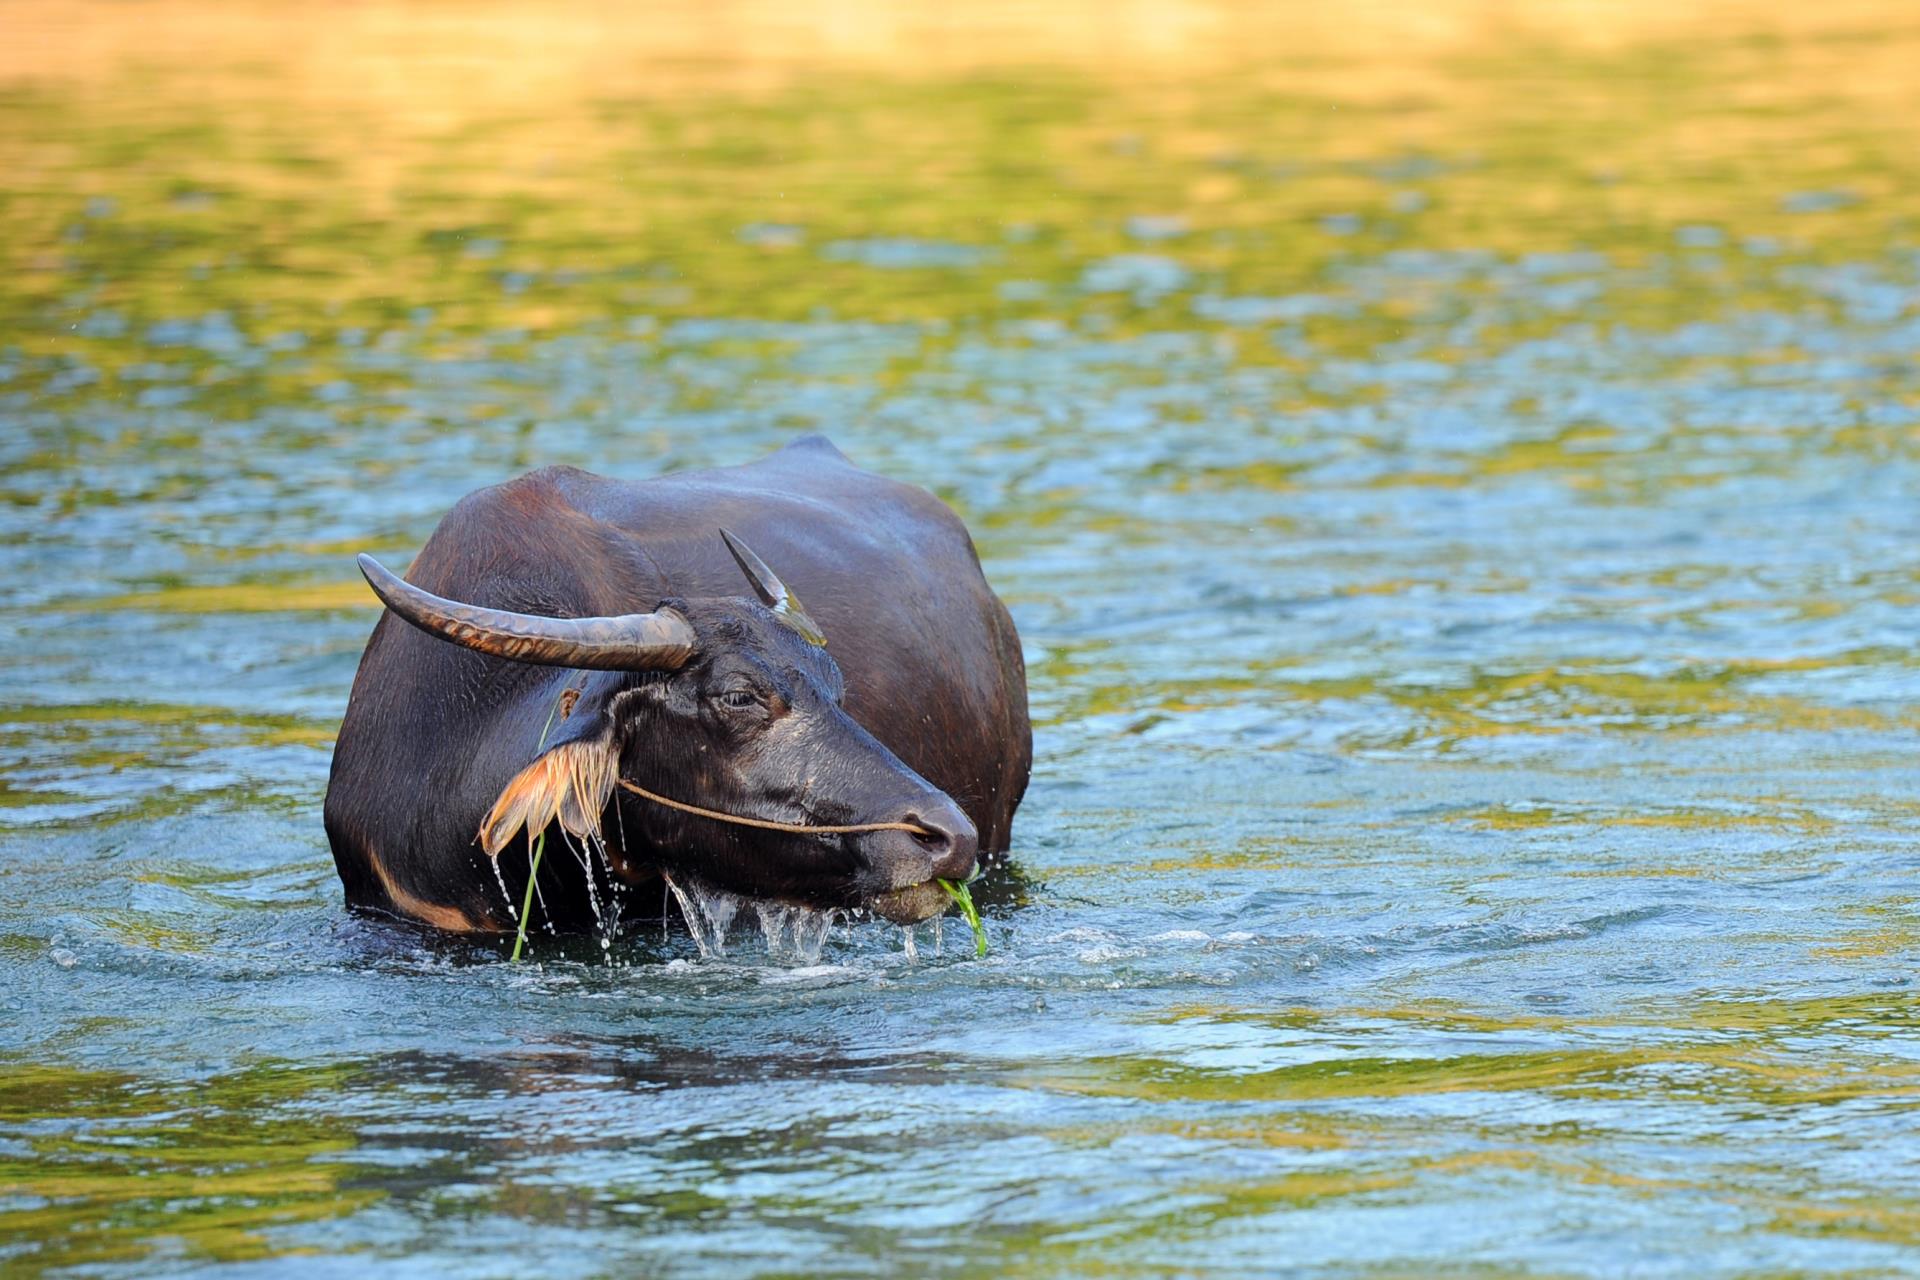 Water Buffalo in Guilin - Rural China